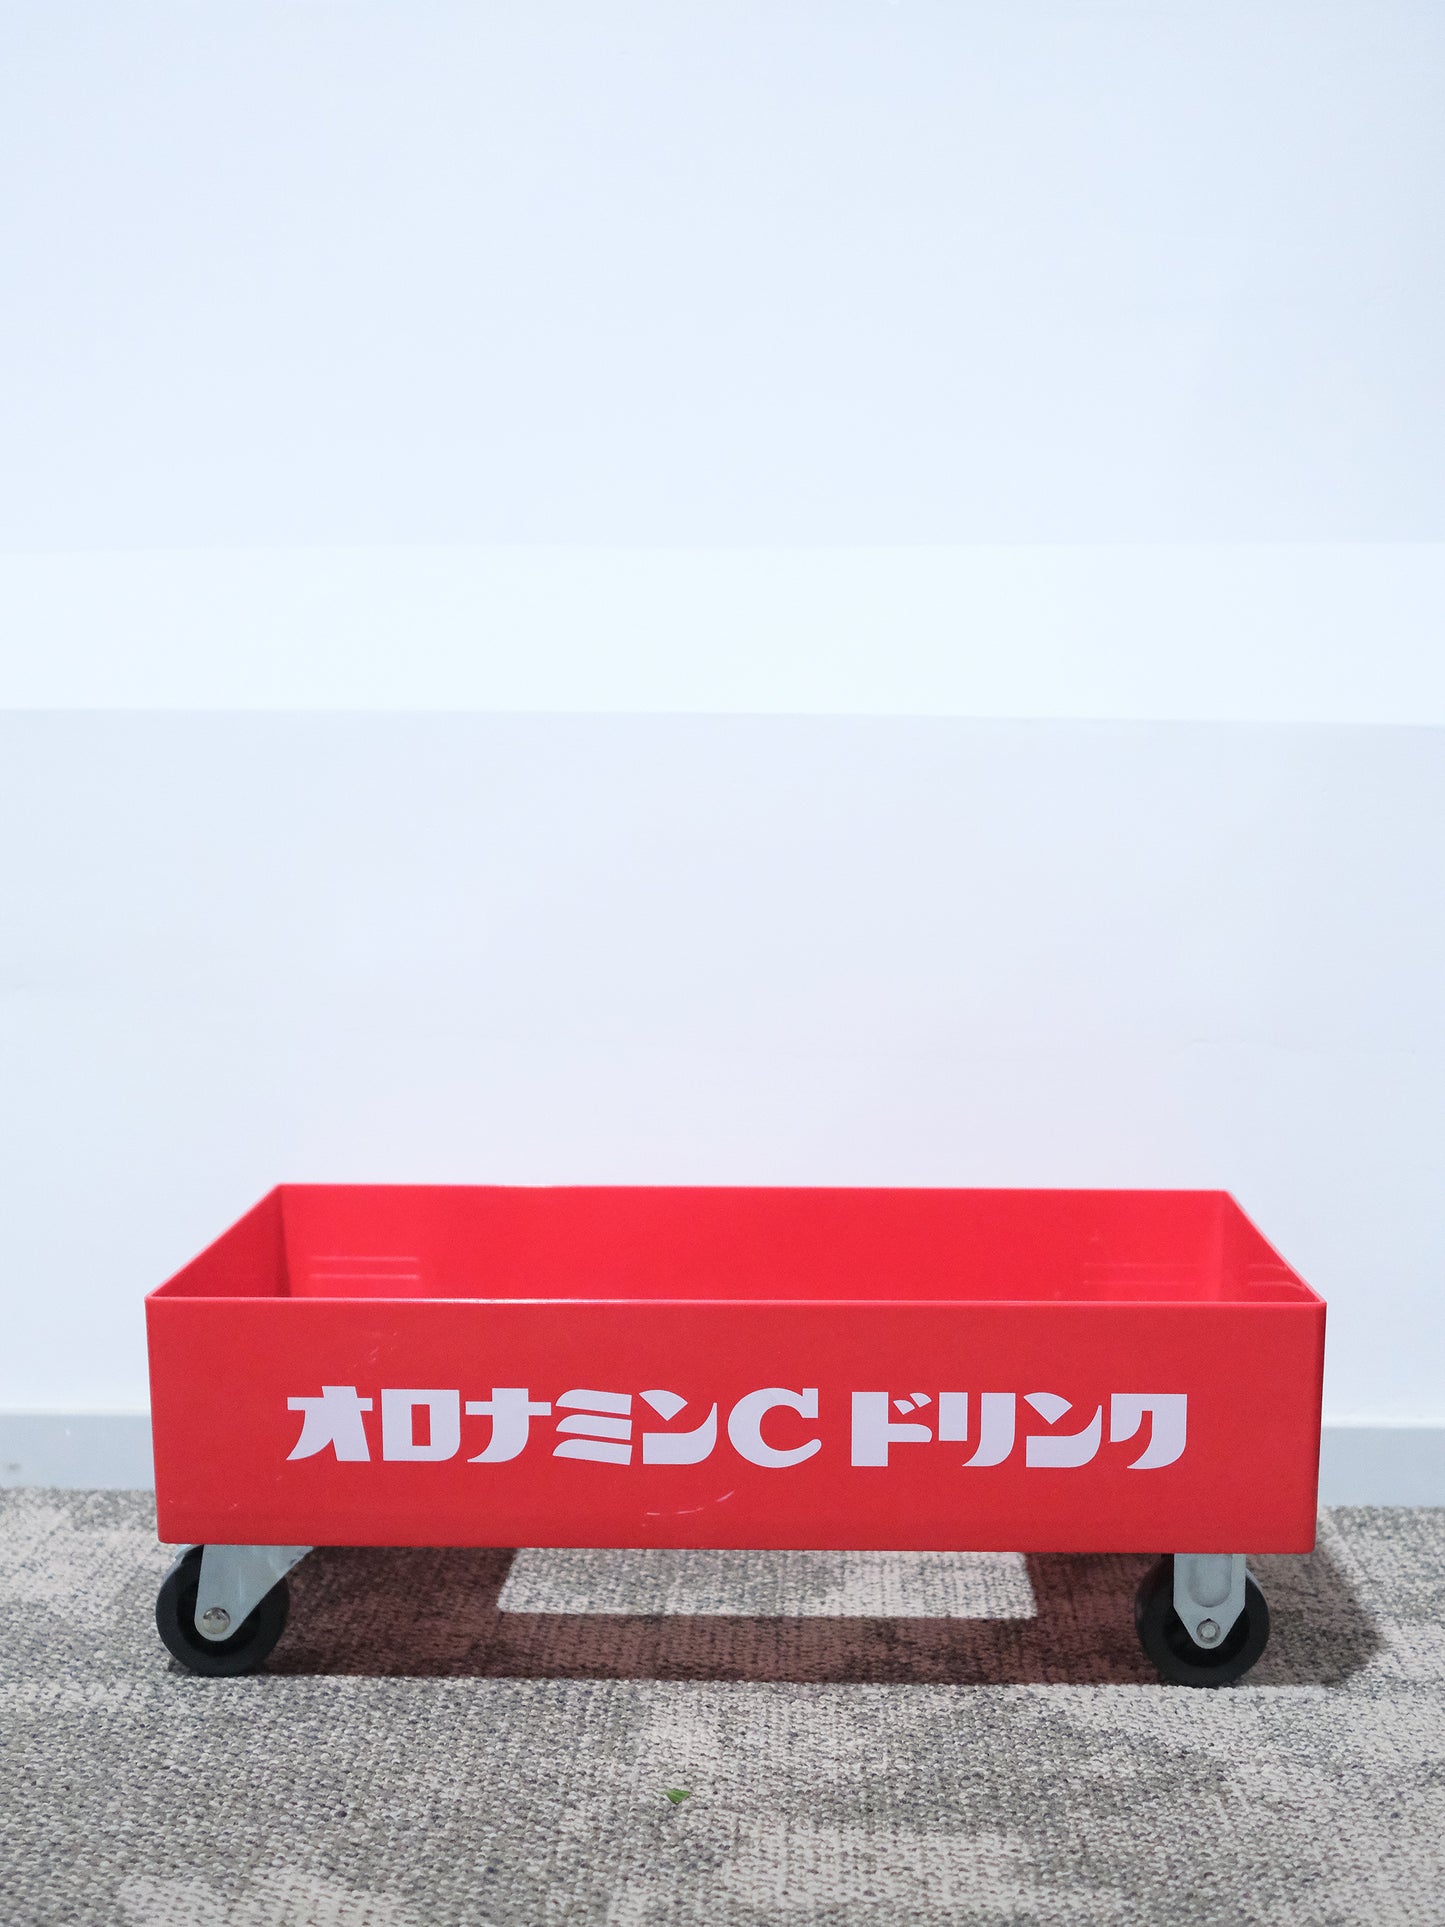 日本 オロナミンC 奧樂蜜C 碳酸飲料 業務用 台車 運輸車 雜物車